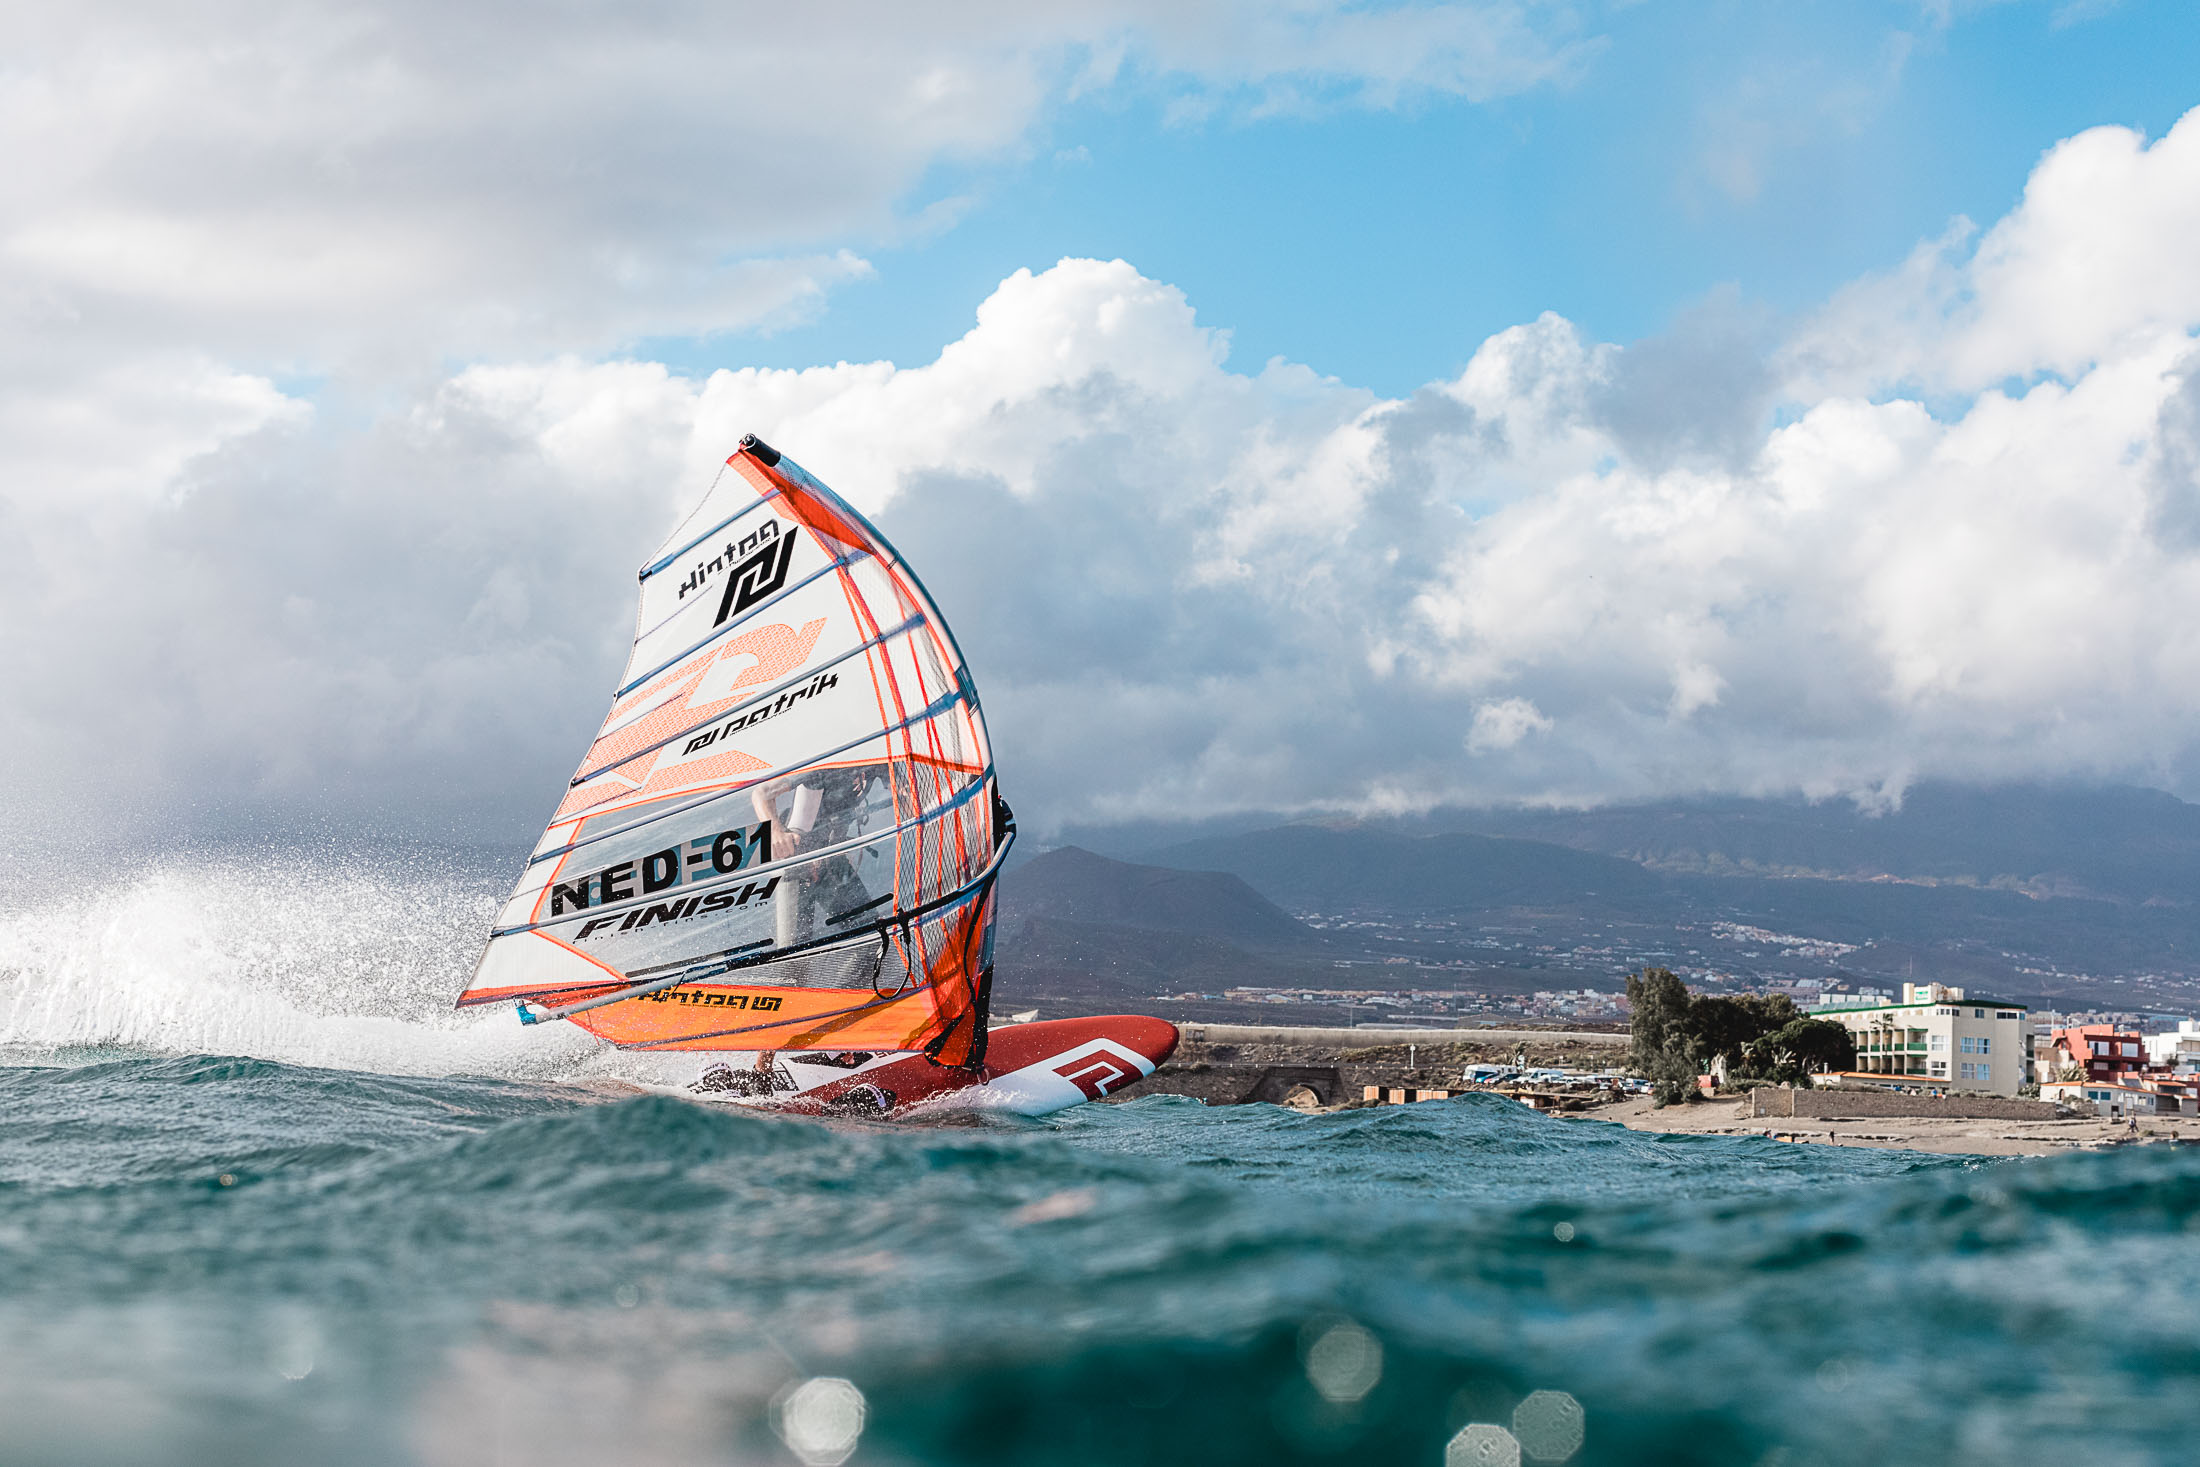 fotograf werbefotograf sportfotografie windsurfen sailloft